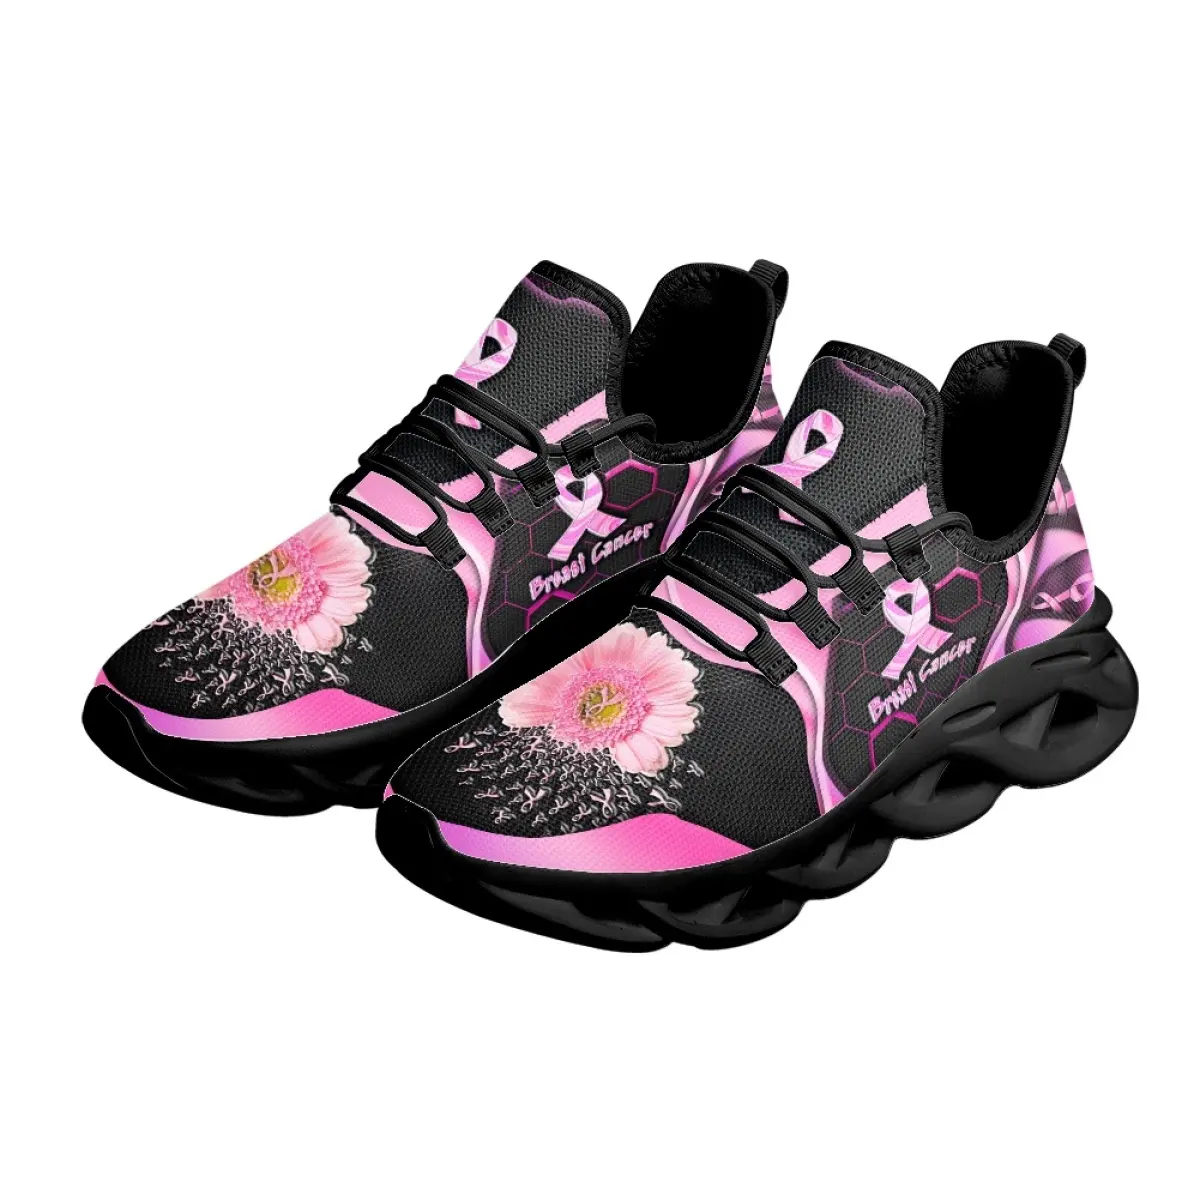 Sepatu kets Non-slip pria wanita motif pola pita bunga merah muda kesadaran payudara sepatu tenis ringan bertali